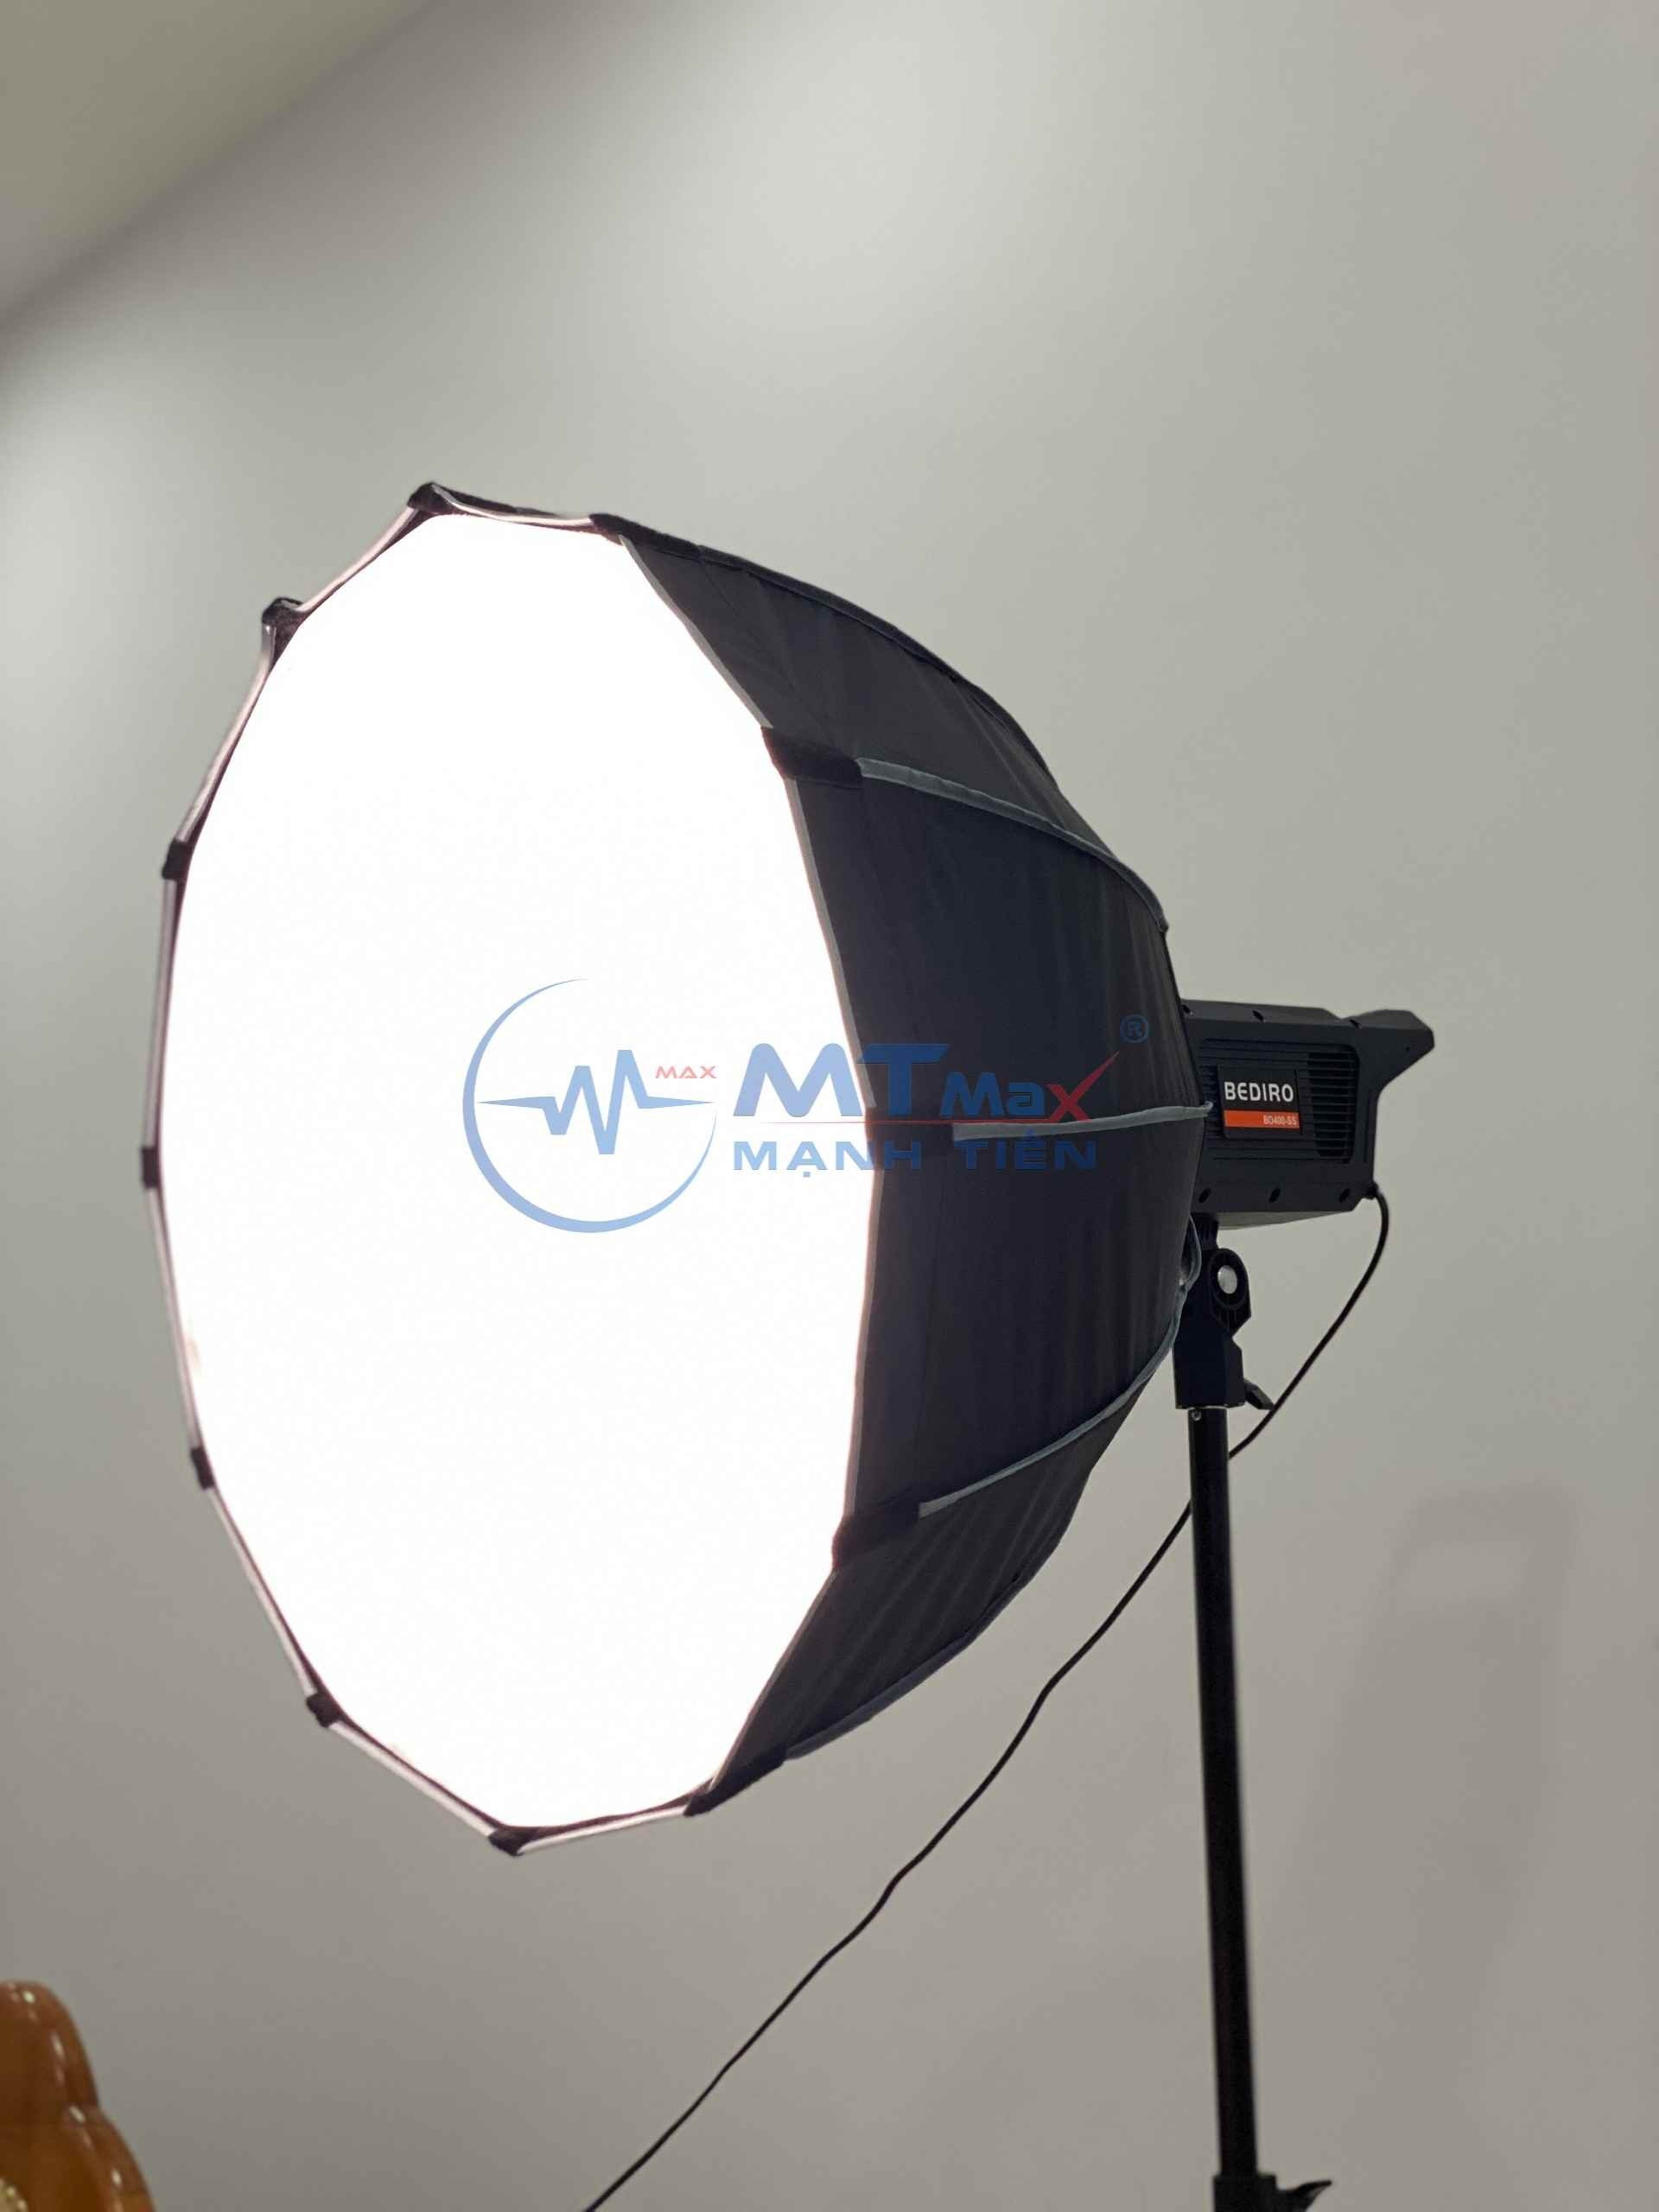 Đèn Trợ Sáng Bediro Studio Chuyên Nghiệp Kèm Chân Xịn - Đèn Mặt Trăng - Gọn Nhẹ Dễ Dàng Sử Dụng chụp ảnh quay video bảo hành 12 tháng New version